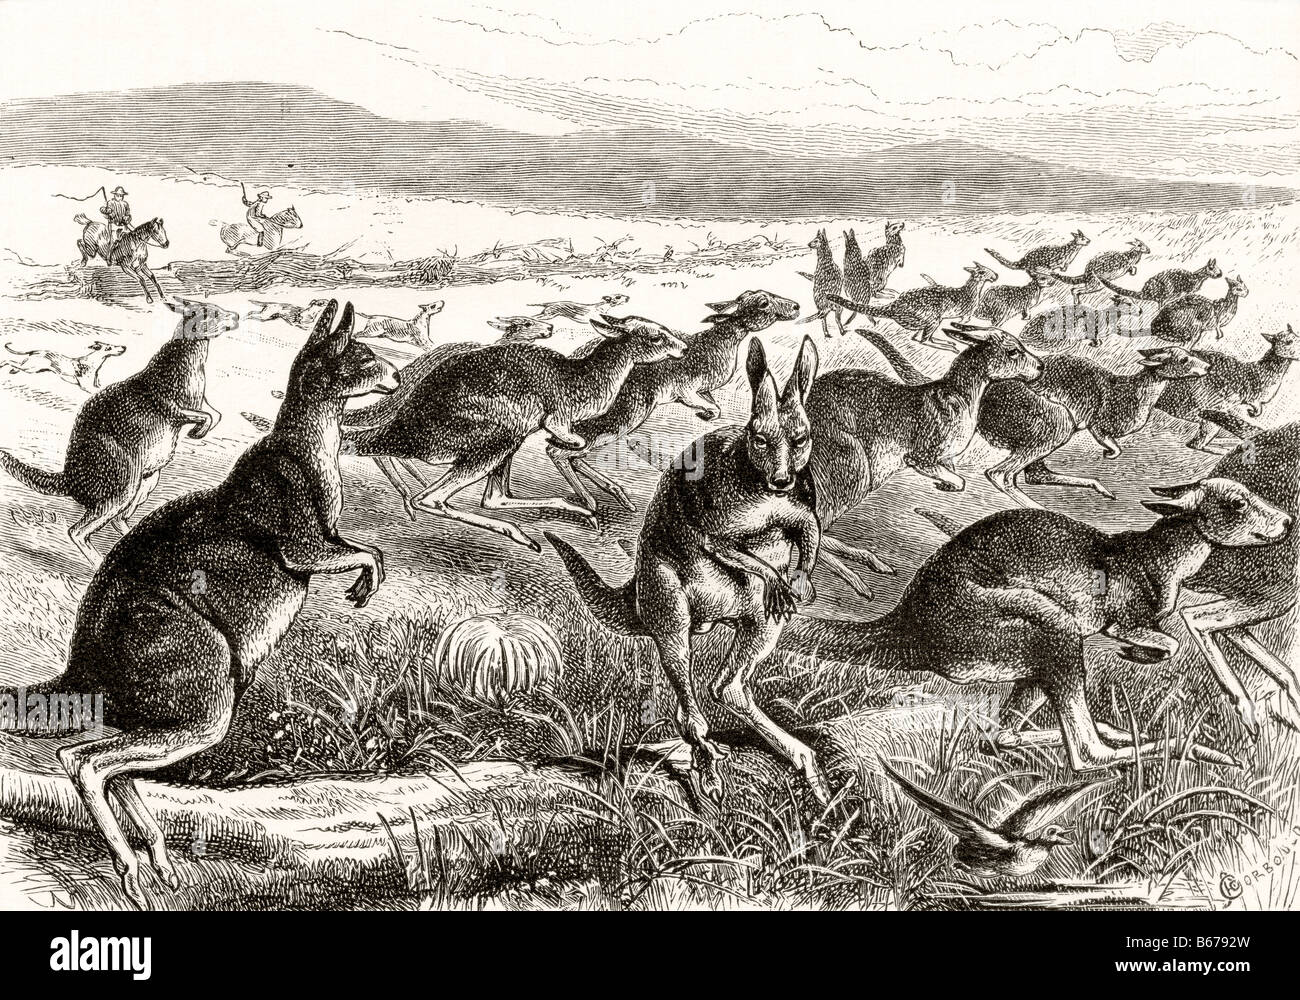 Une chasse au kangourou vers 1880. D'après le livre Australian Pictures de Howard Willoughby, publié par la Société des tractes religieux, 1886. Banque D'Images